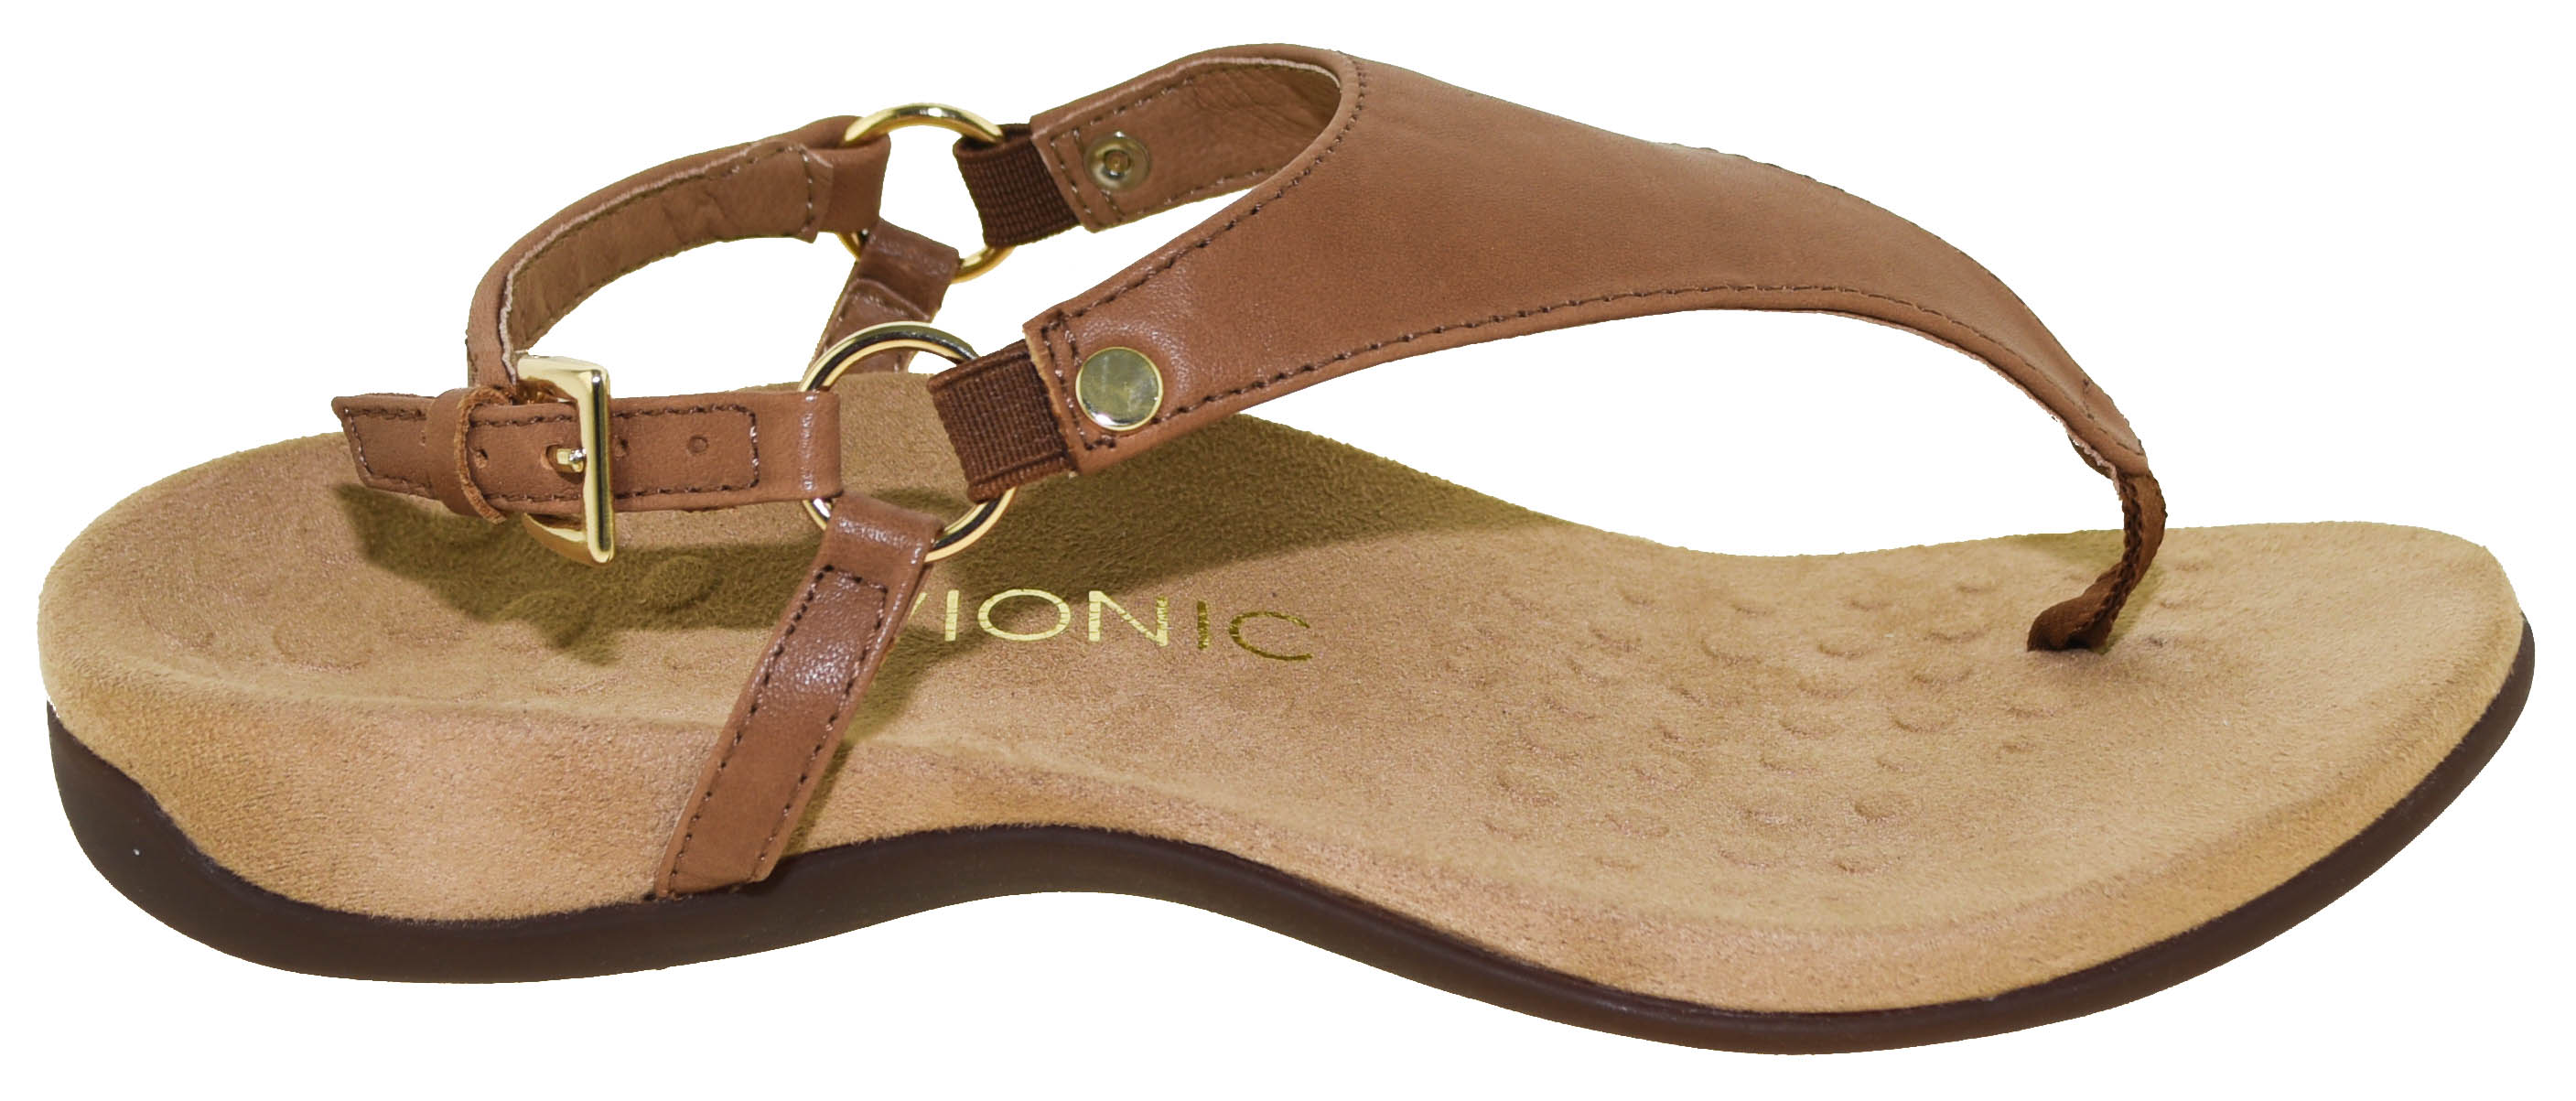 vionic backstrap sandals